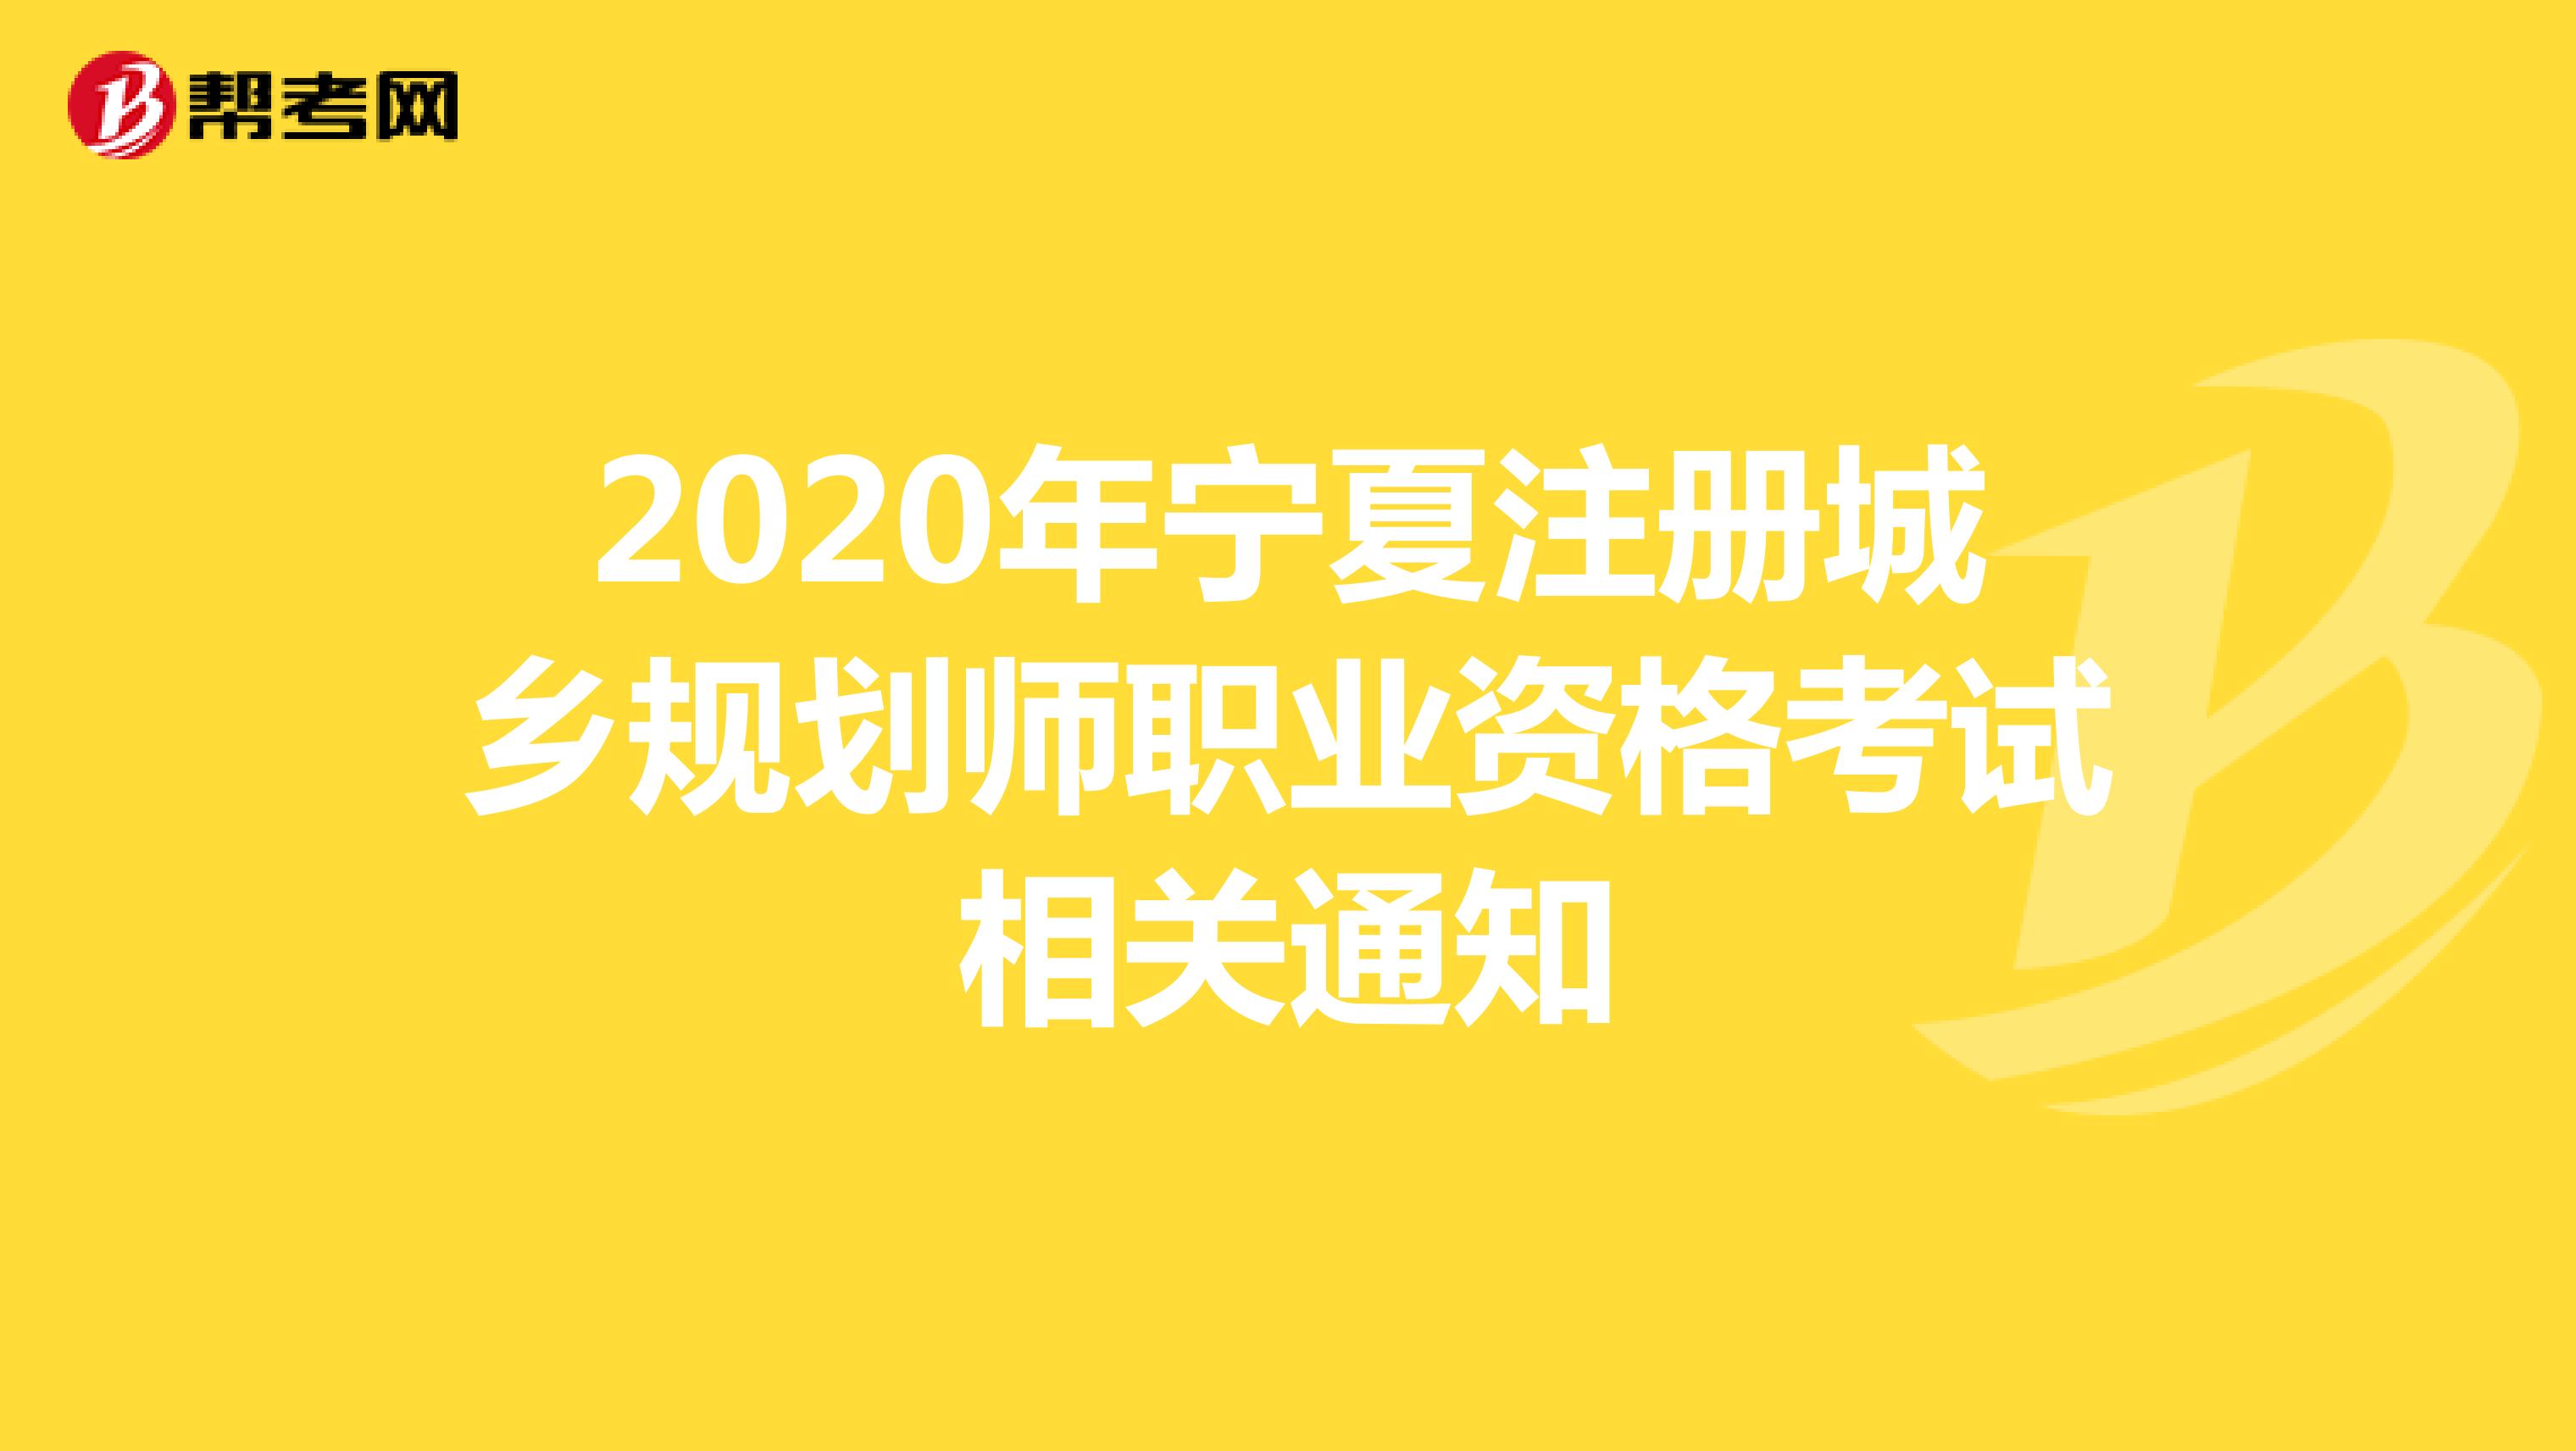 2020年宁夏注册城乡规划师职业资格考试相关通知